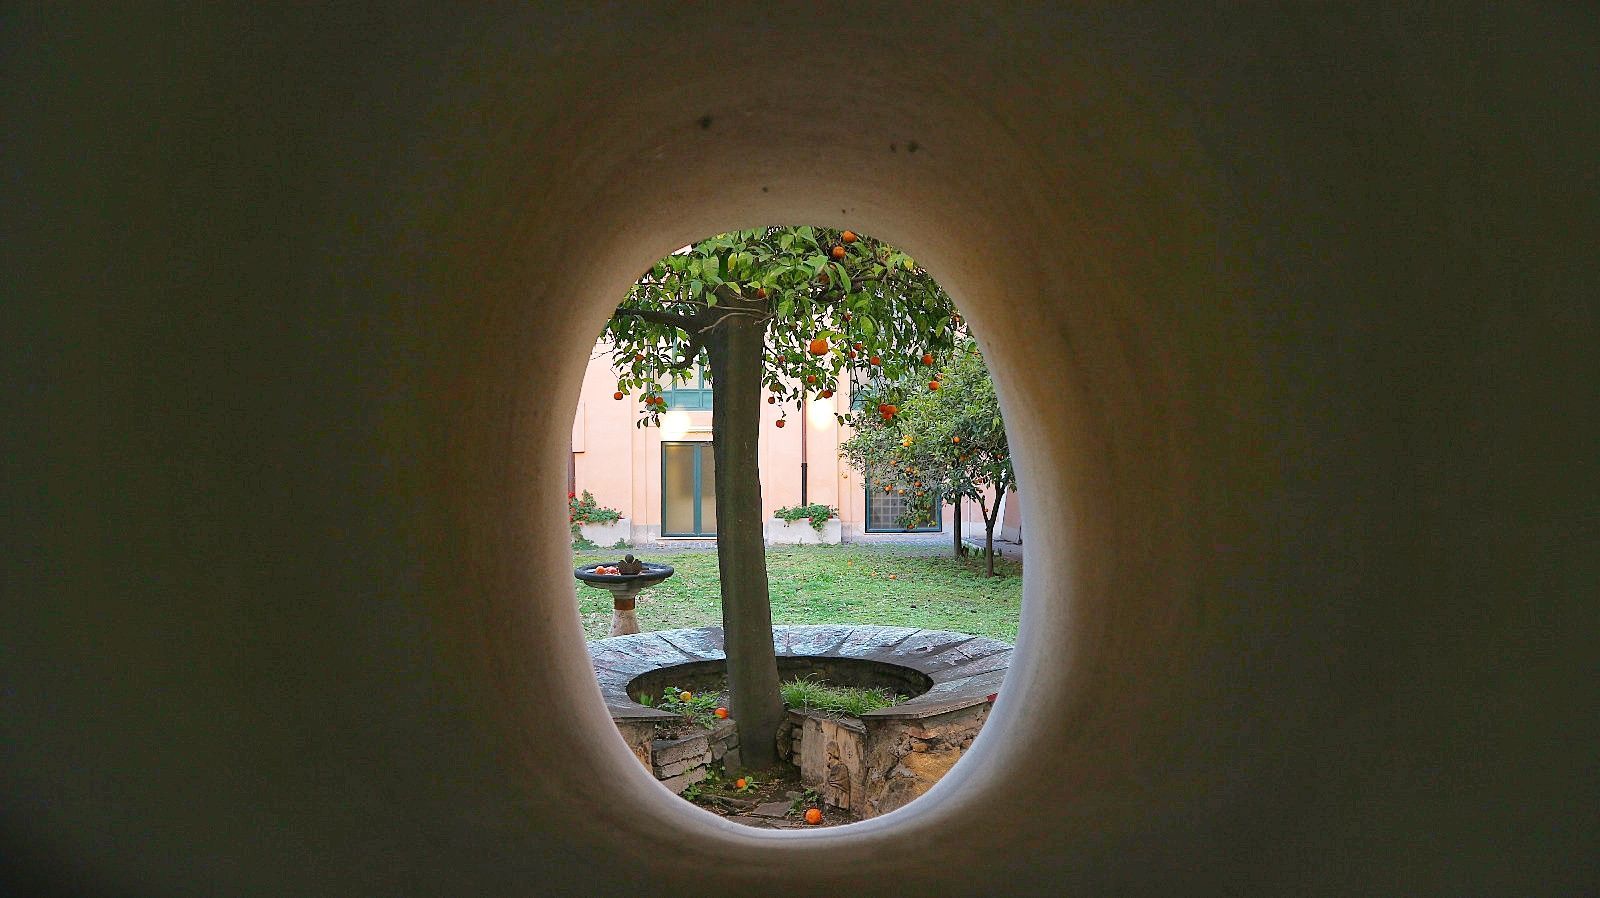 Albero magico - Giardino degli Aranci (Roma) - Fonte: destinazioneterra.com